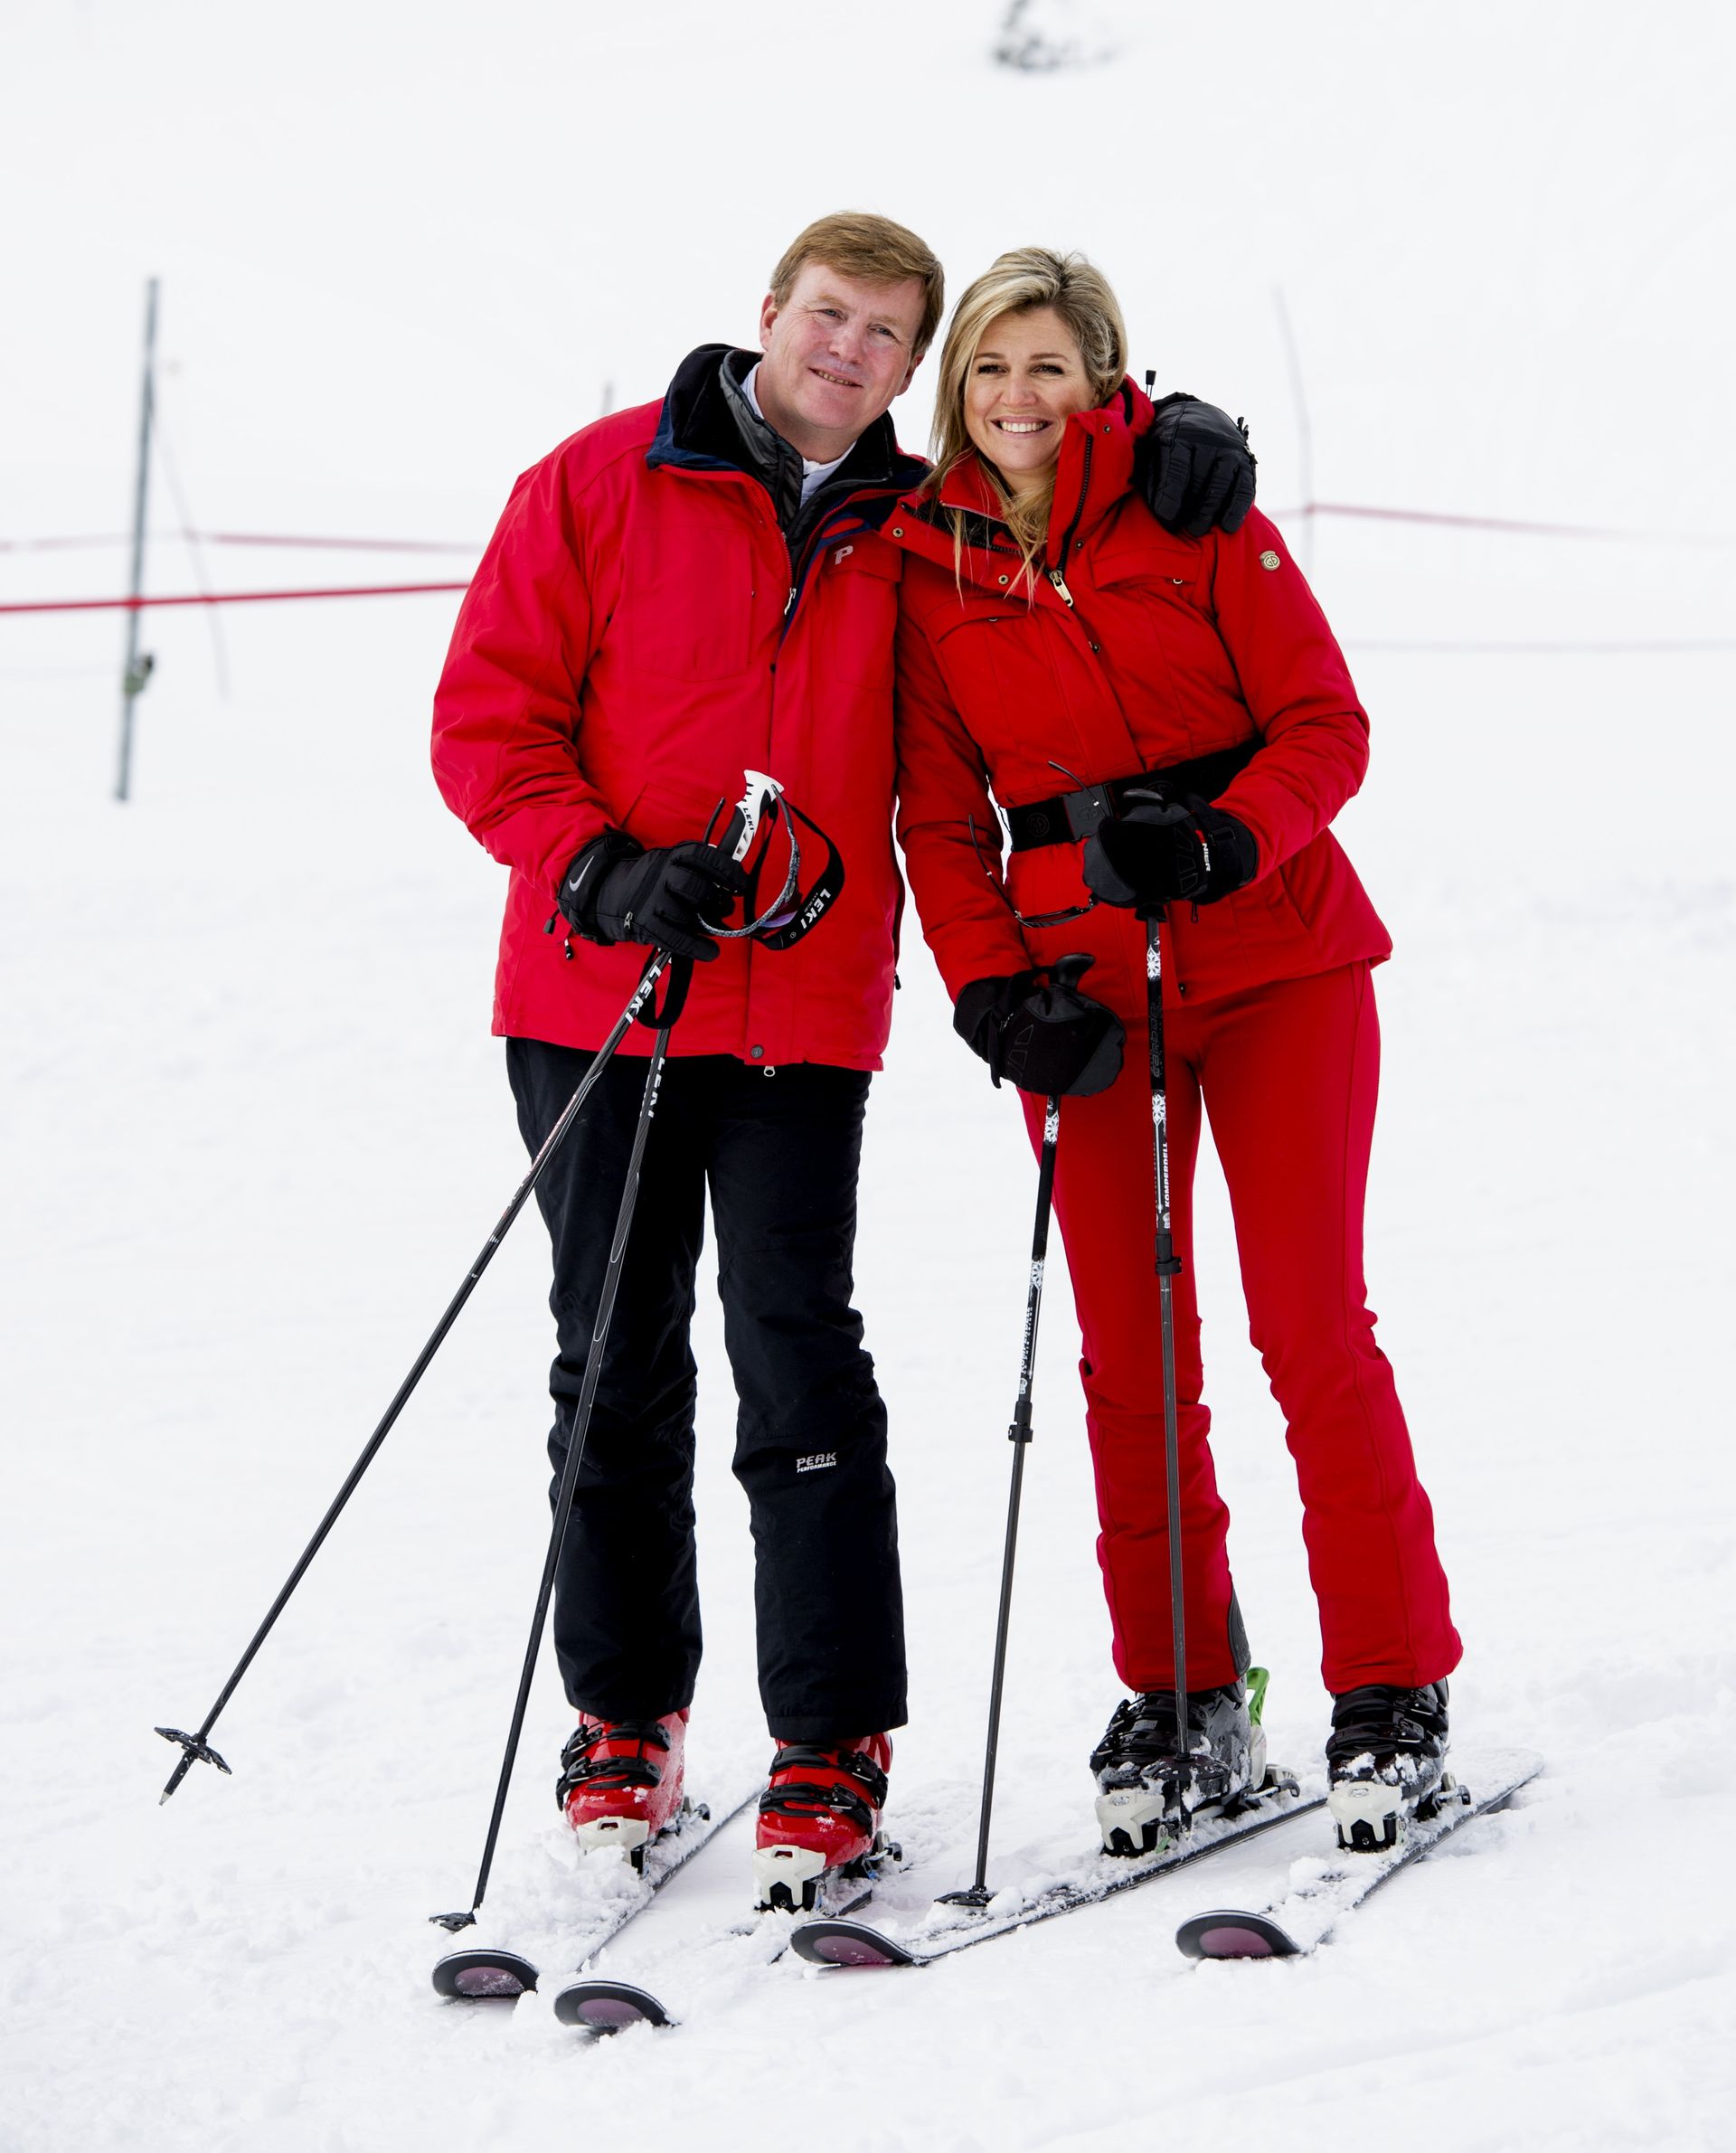 Willem-Alexander en Máxima op ski's in rode pakken